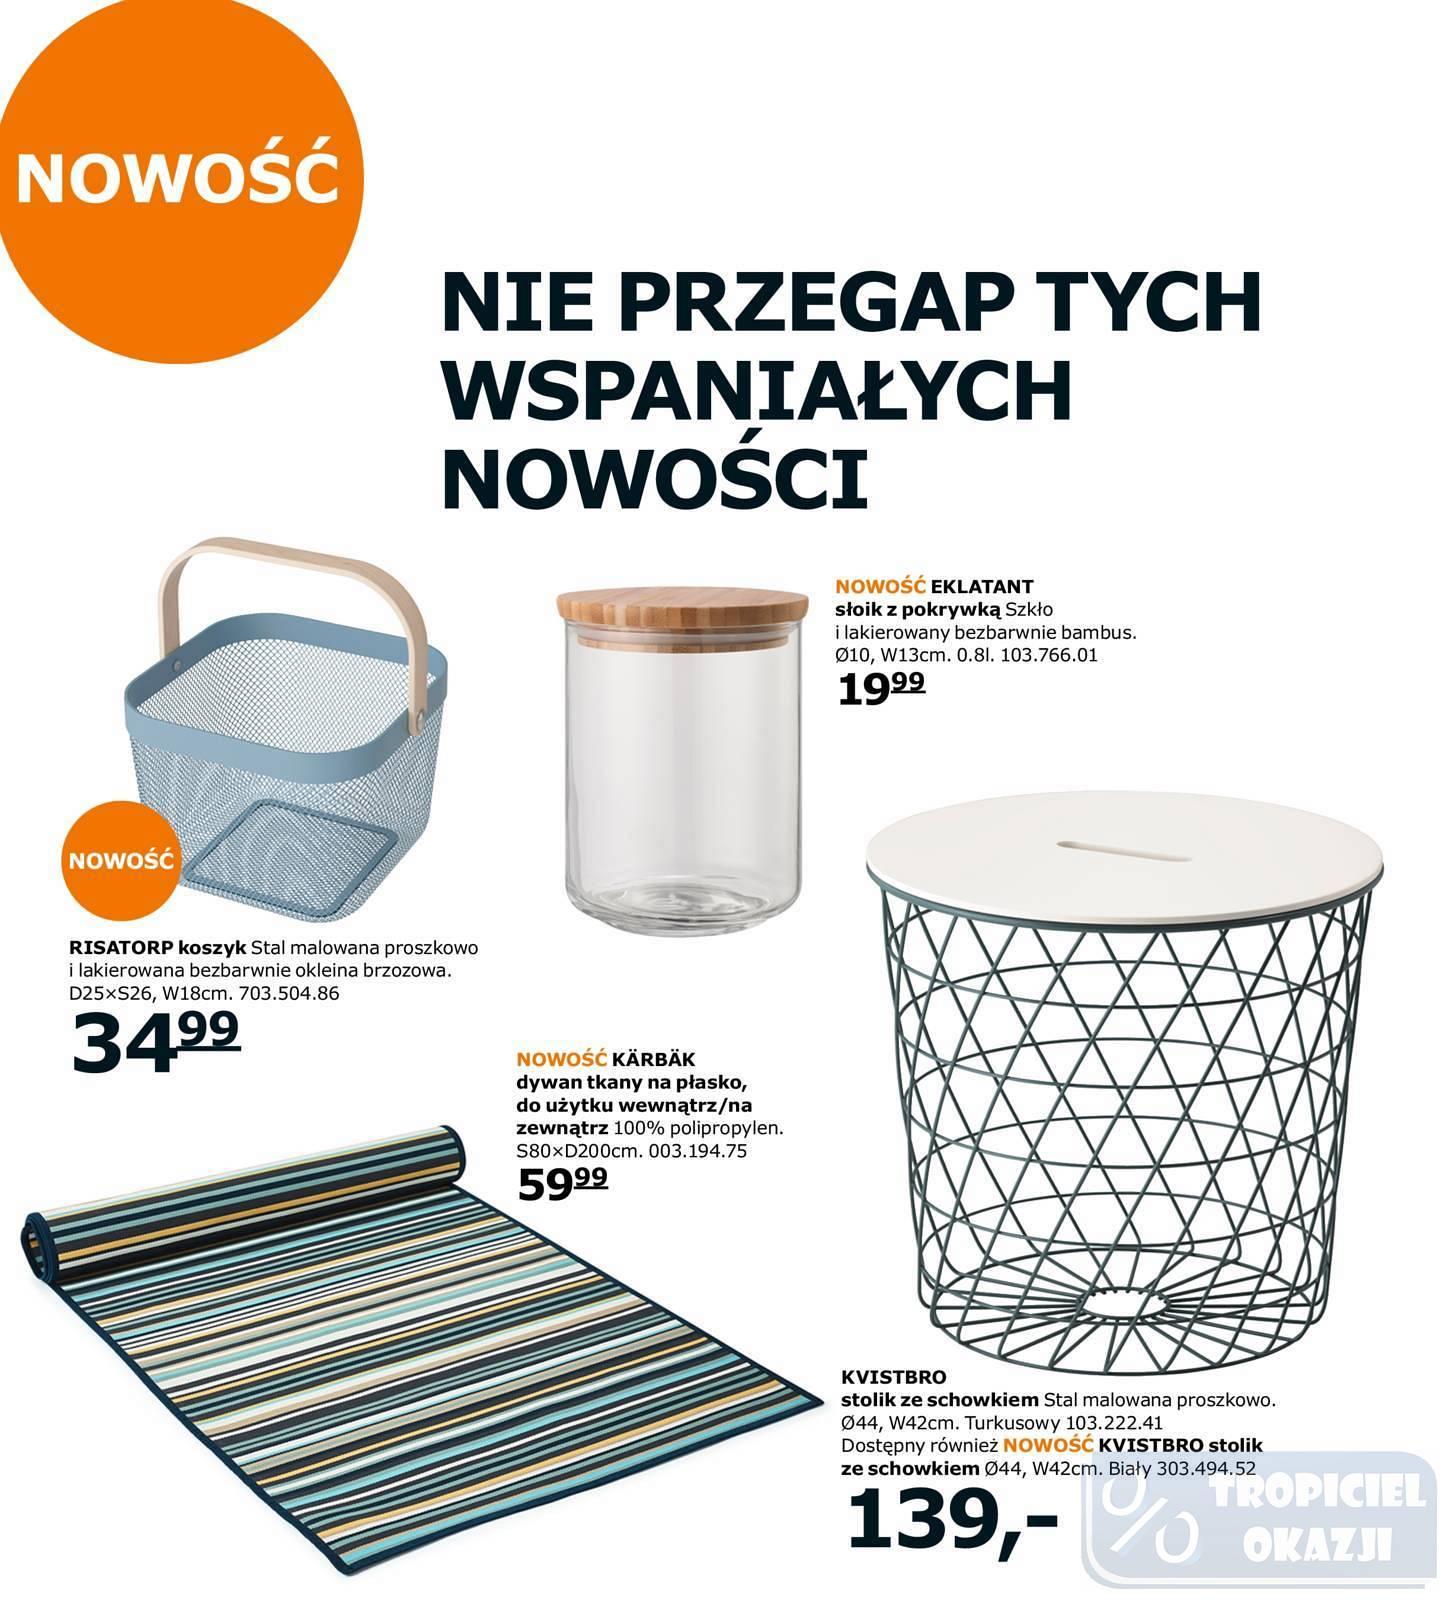 Gazetka promocyjna IKEA do 31/12/2017 str.1